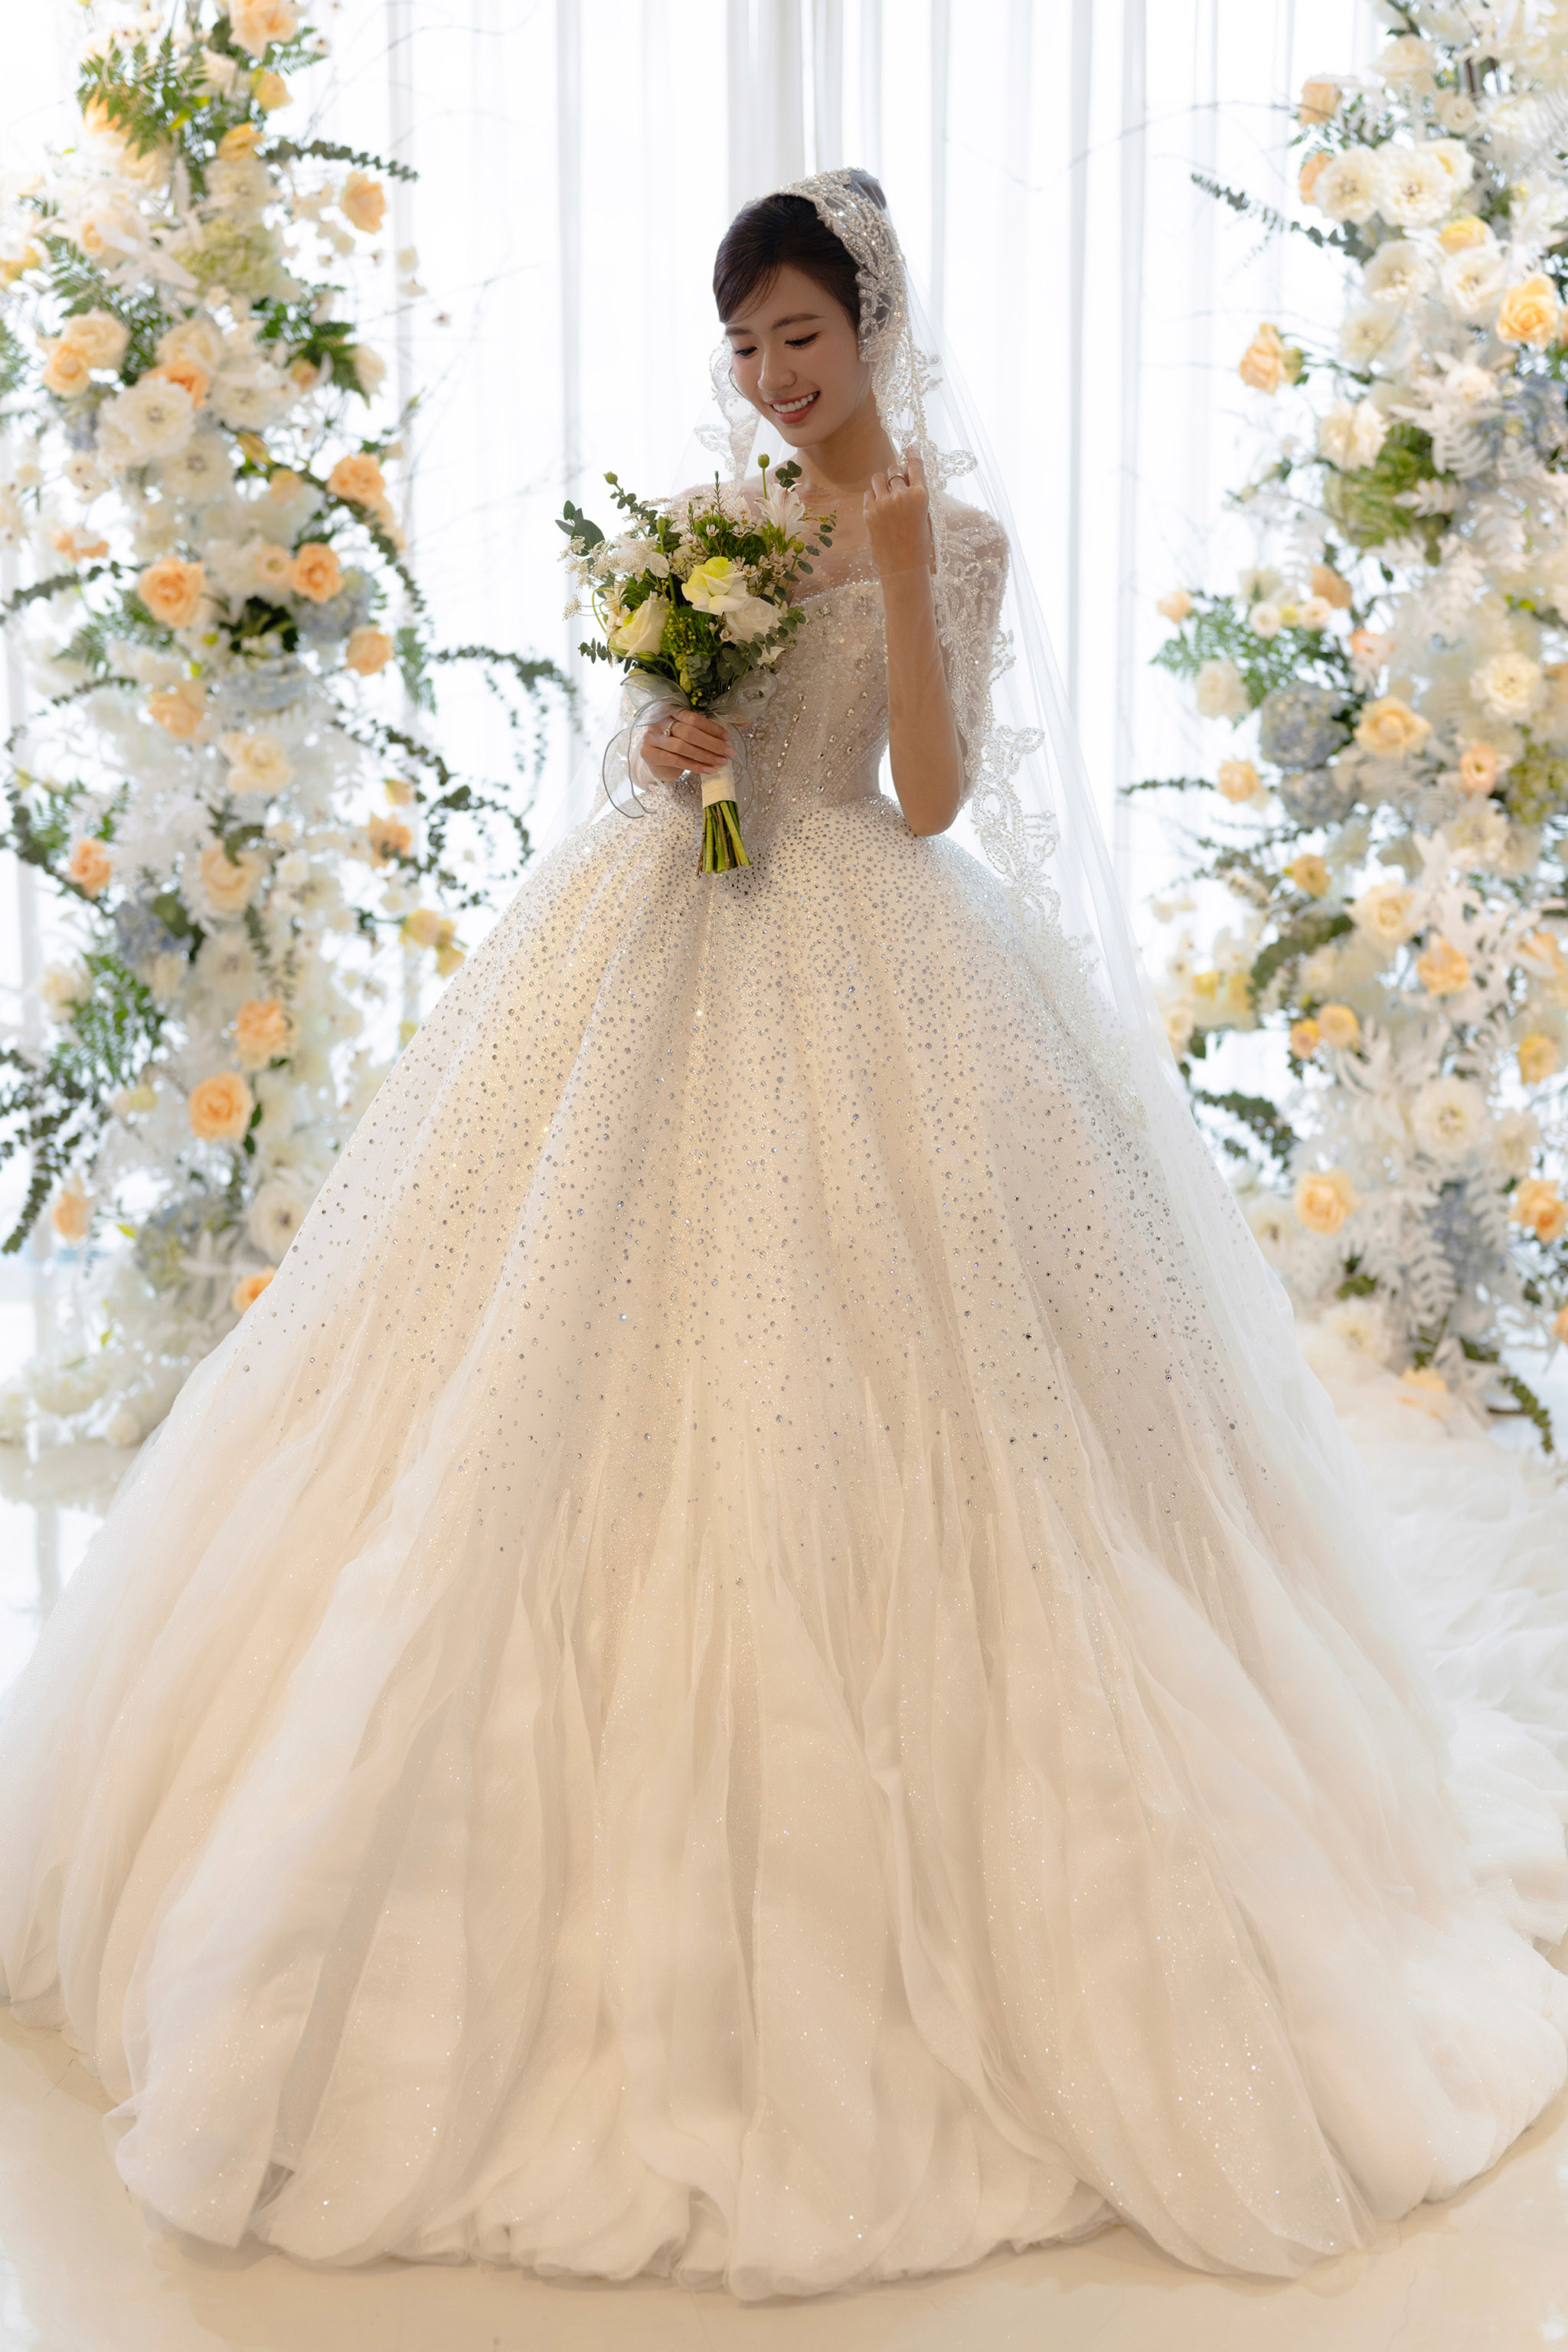 Top 5 cửa hàng thuê váy cưới đẹp nhất Vinh, Nghệ An 2021 - 2022